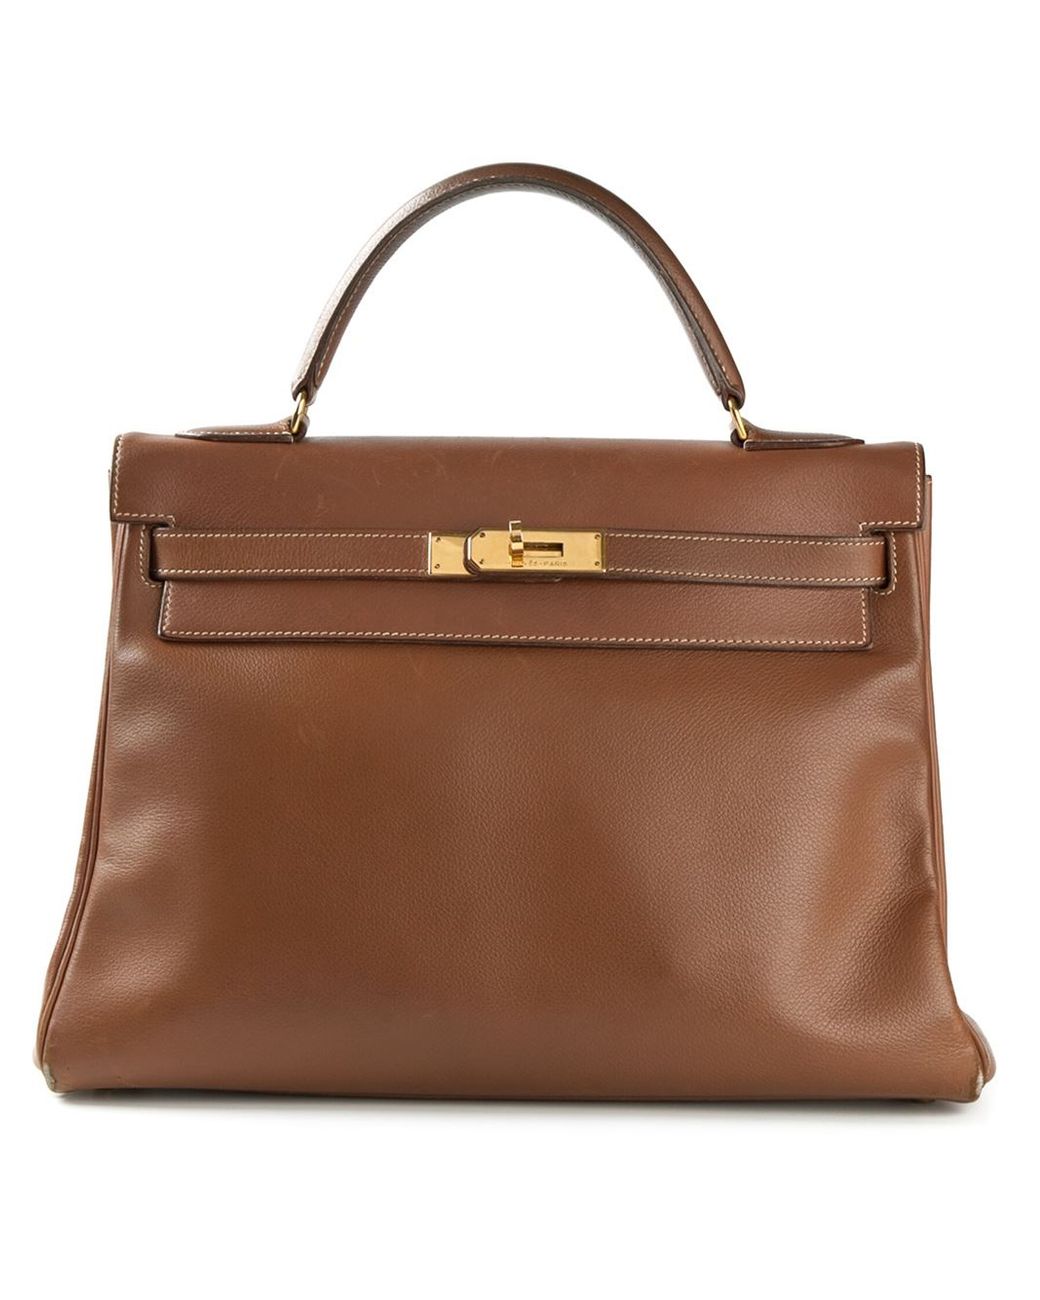 Hermès Kelly Bag in Brown